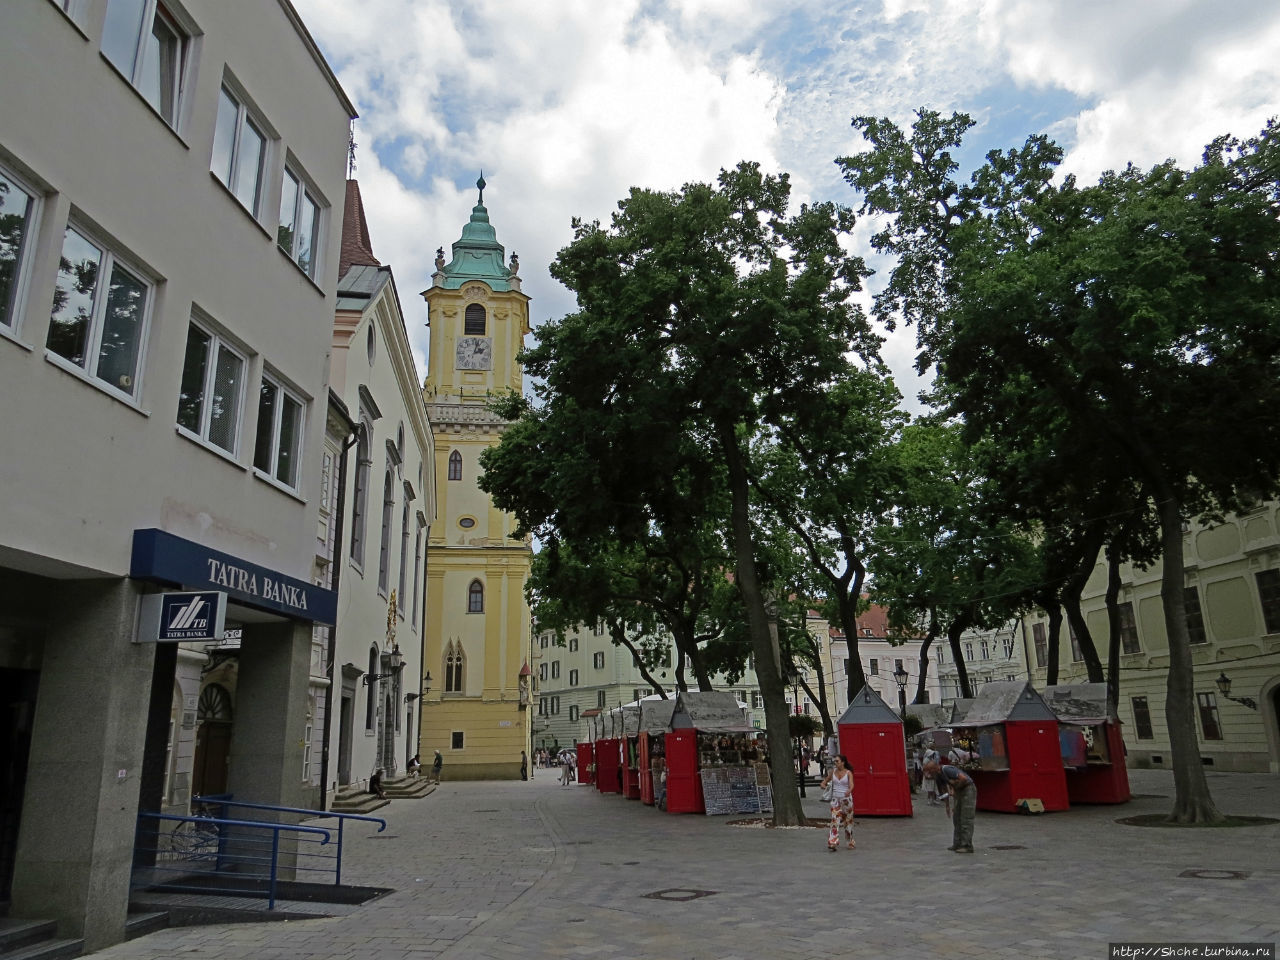 Возле ратуши — платочный рынок сувениров Братислава, Словакия